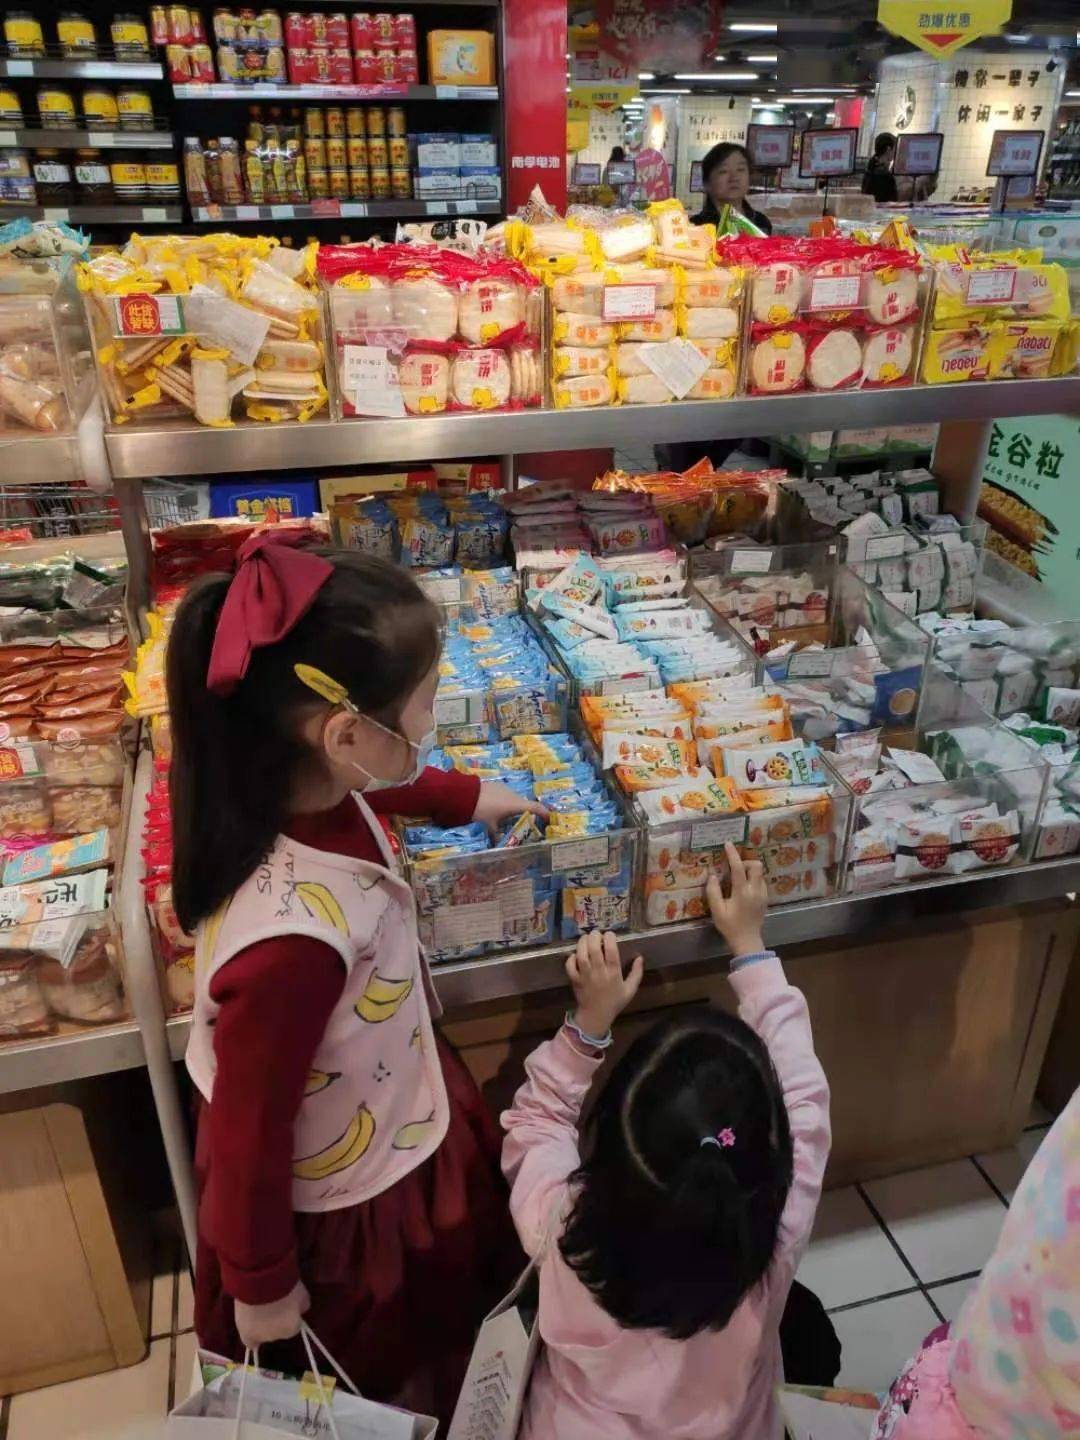 上朗海棠aie国际幼儿园小鬼来当家十元超市购物活动